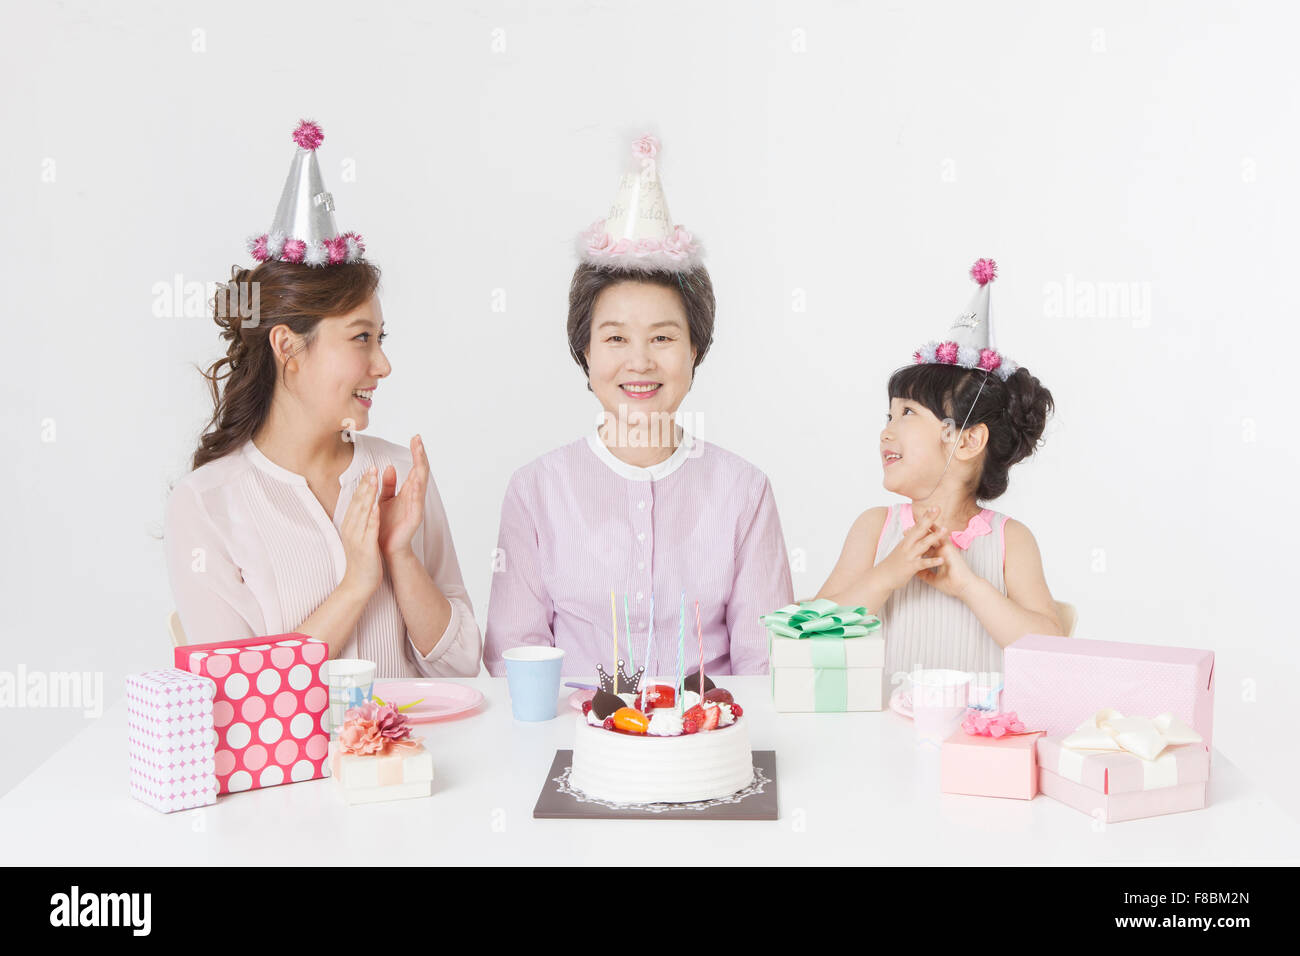 Giovane ragazza e sua madre nonna festeggia il compleanno tutti in party hat e seduti a tavola con una torta e confezioni regalo Foto Stock